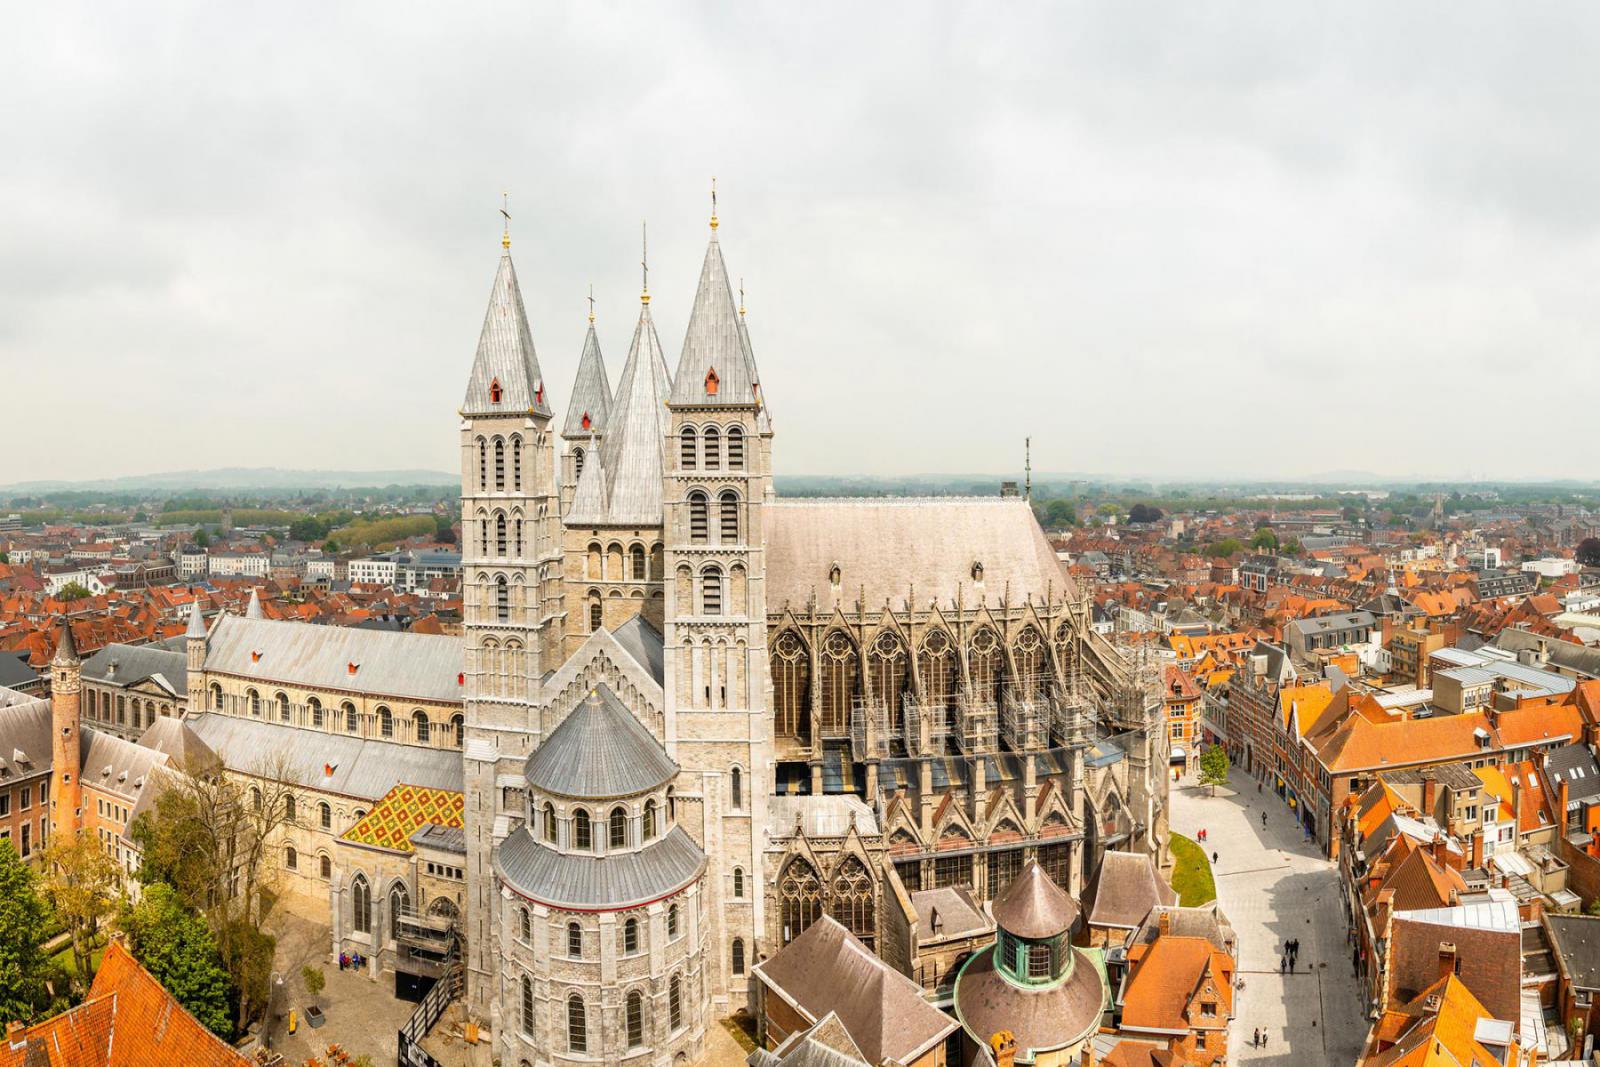 De Onze-Lieve-Vrouwekathedraal in Tournai staat bekend om de vijf torens